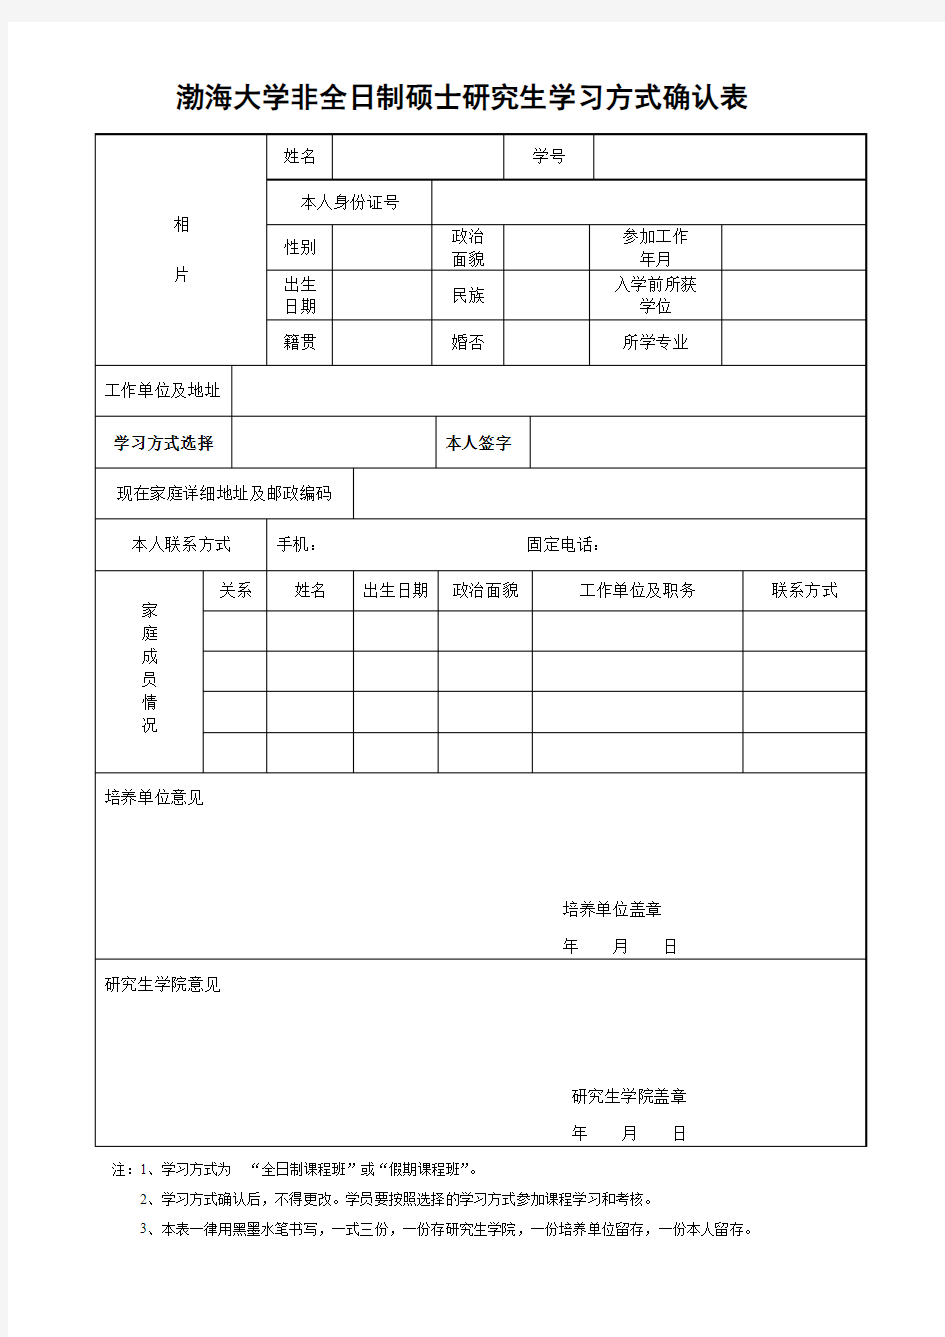 渤海大学非全日制硕士研究生学习方式确认表